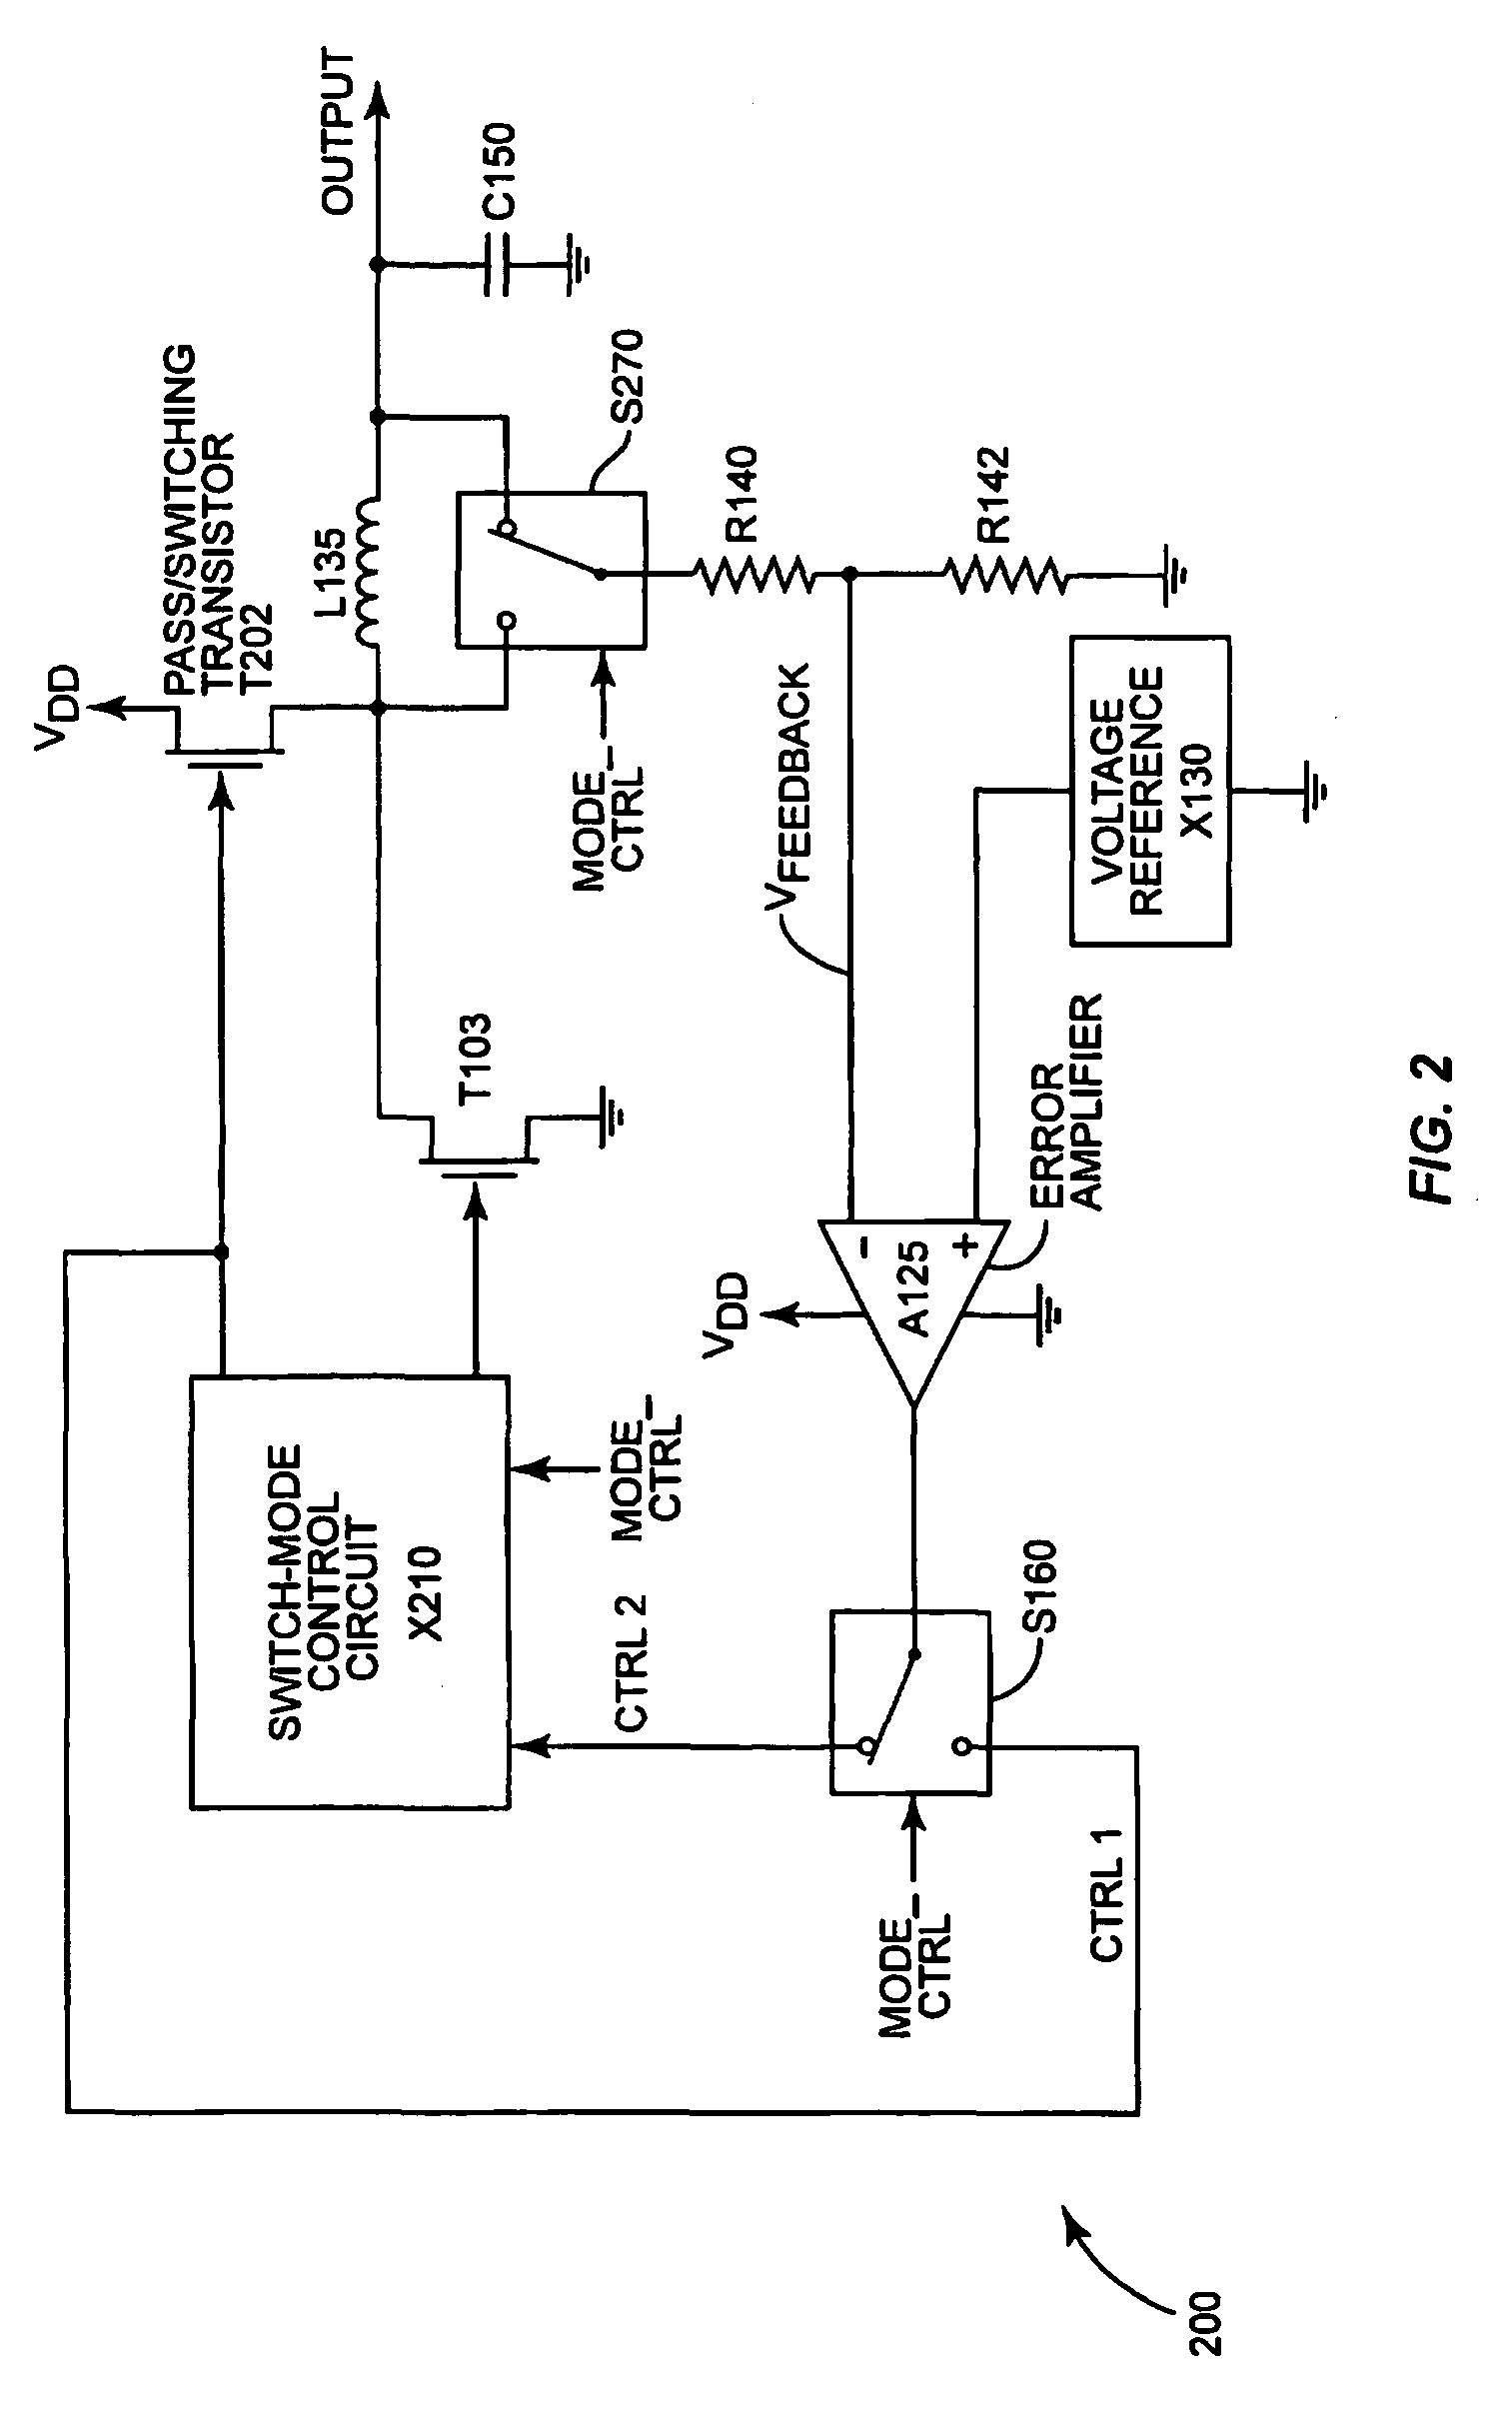 Multimode voltage regulator circuit